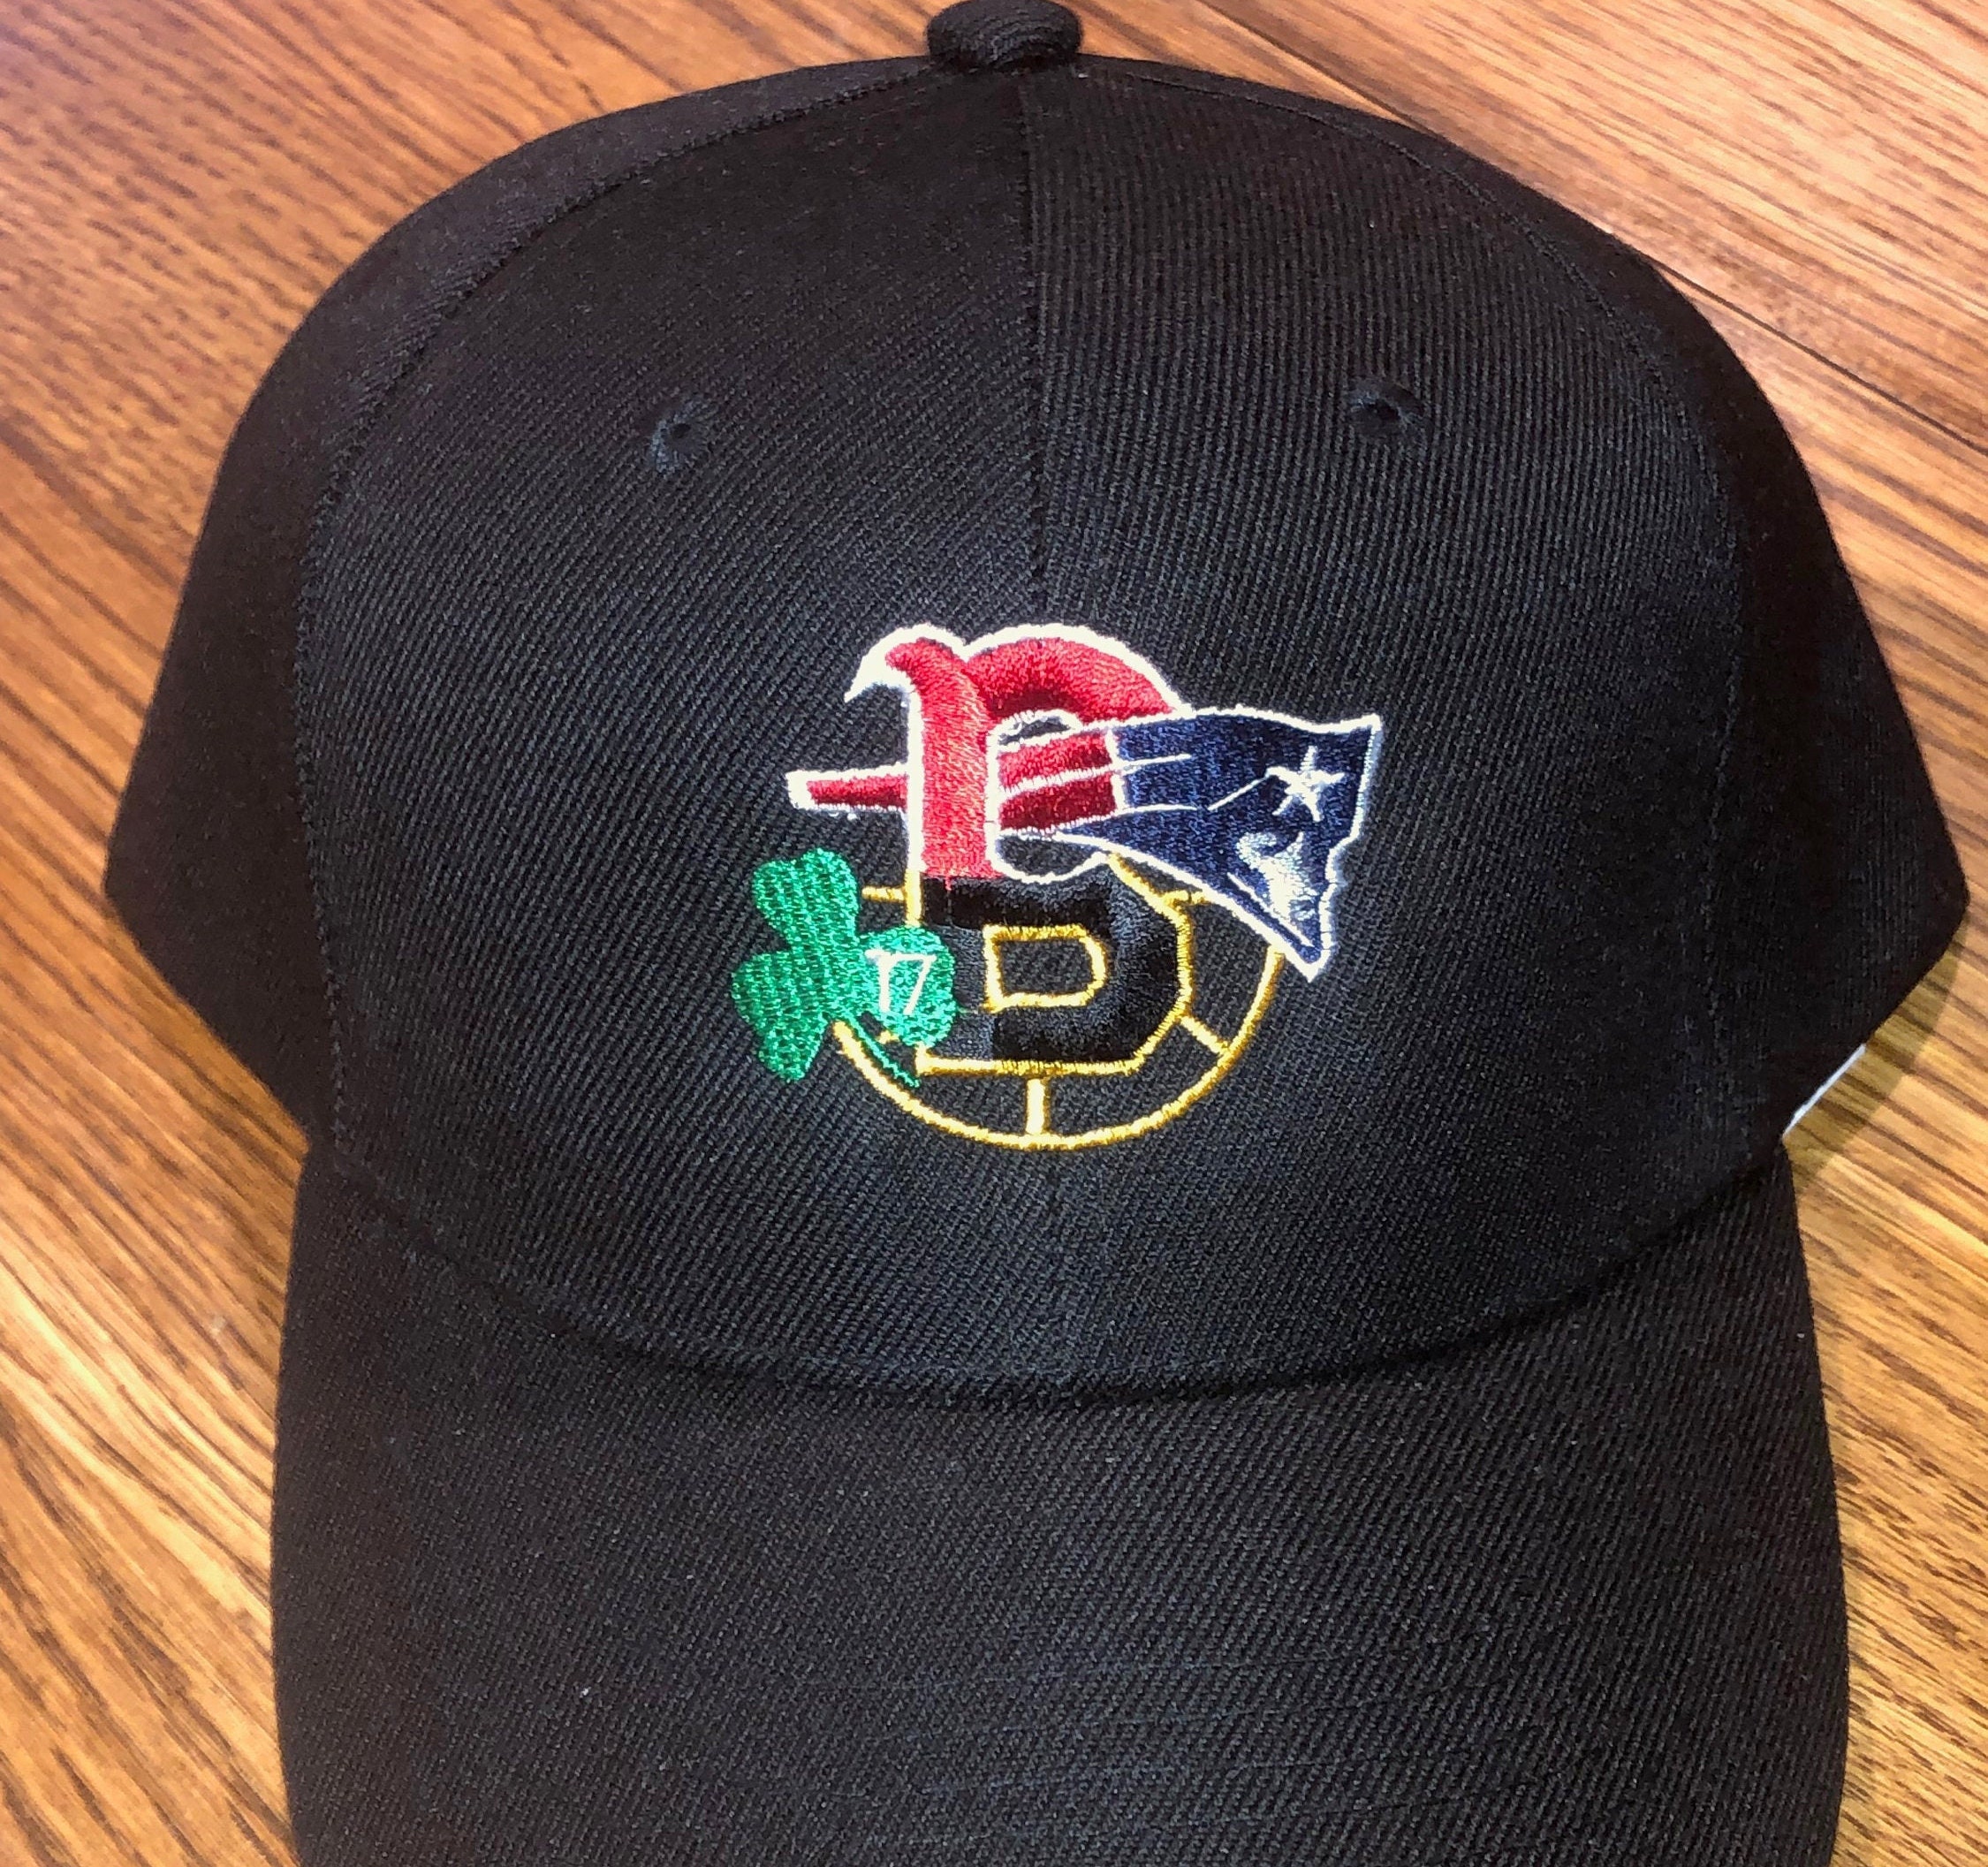 Black NE Patriots boston Bruins Red Sox and Celtics 4 Logo | Etsy